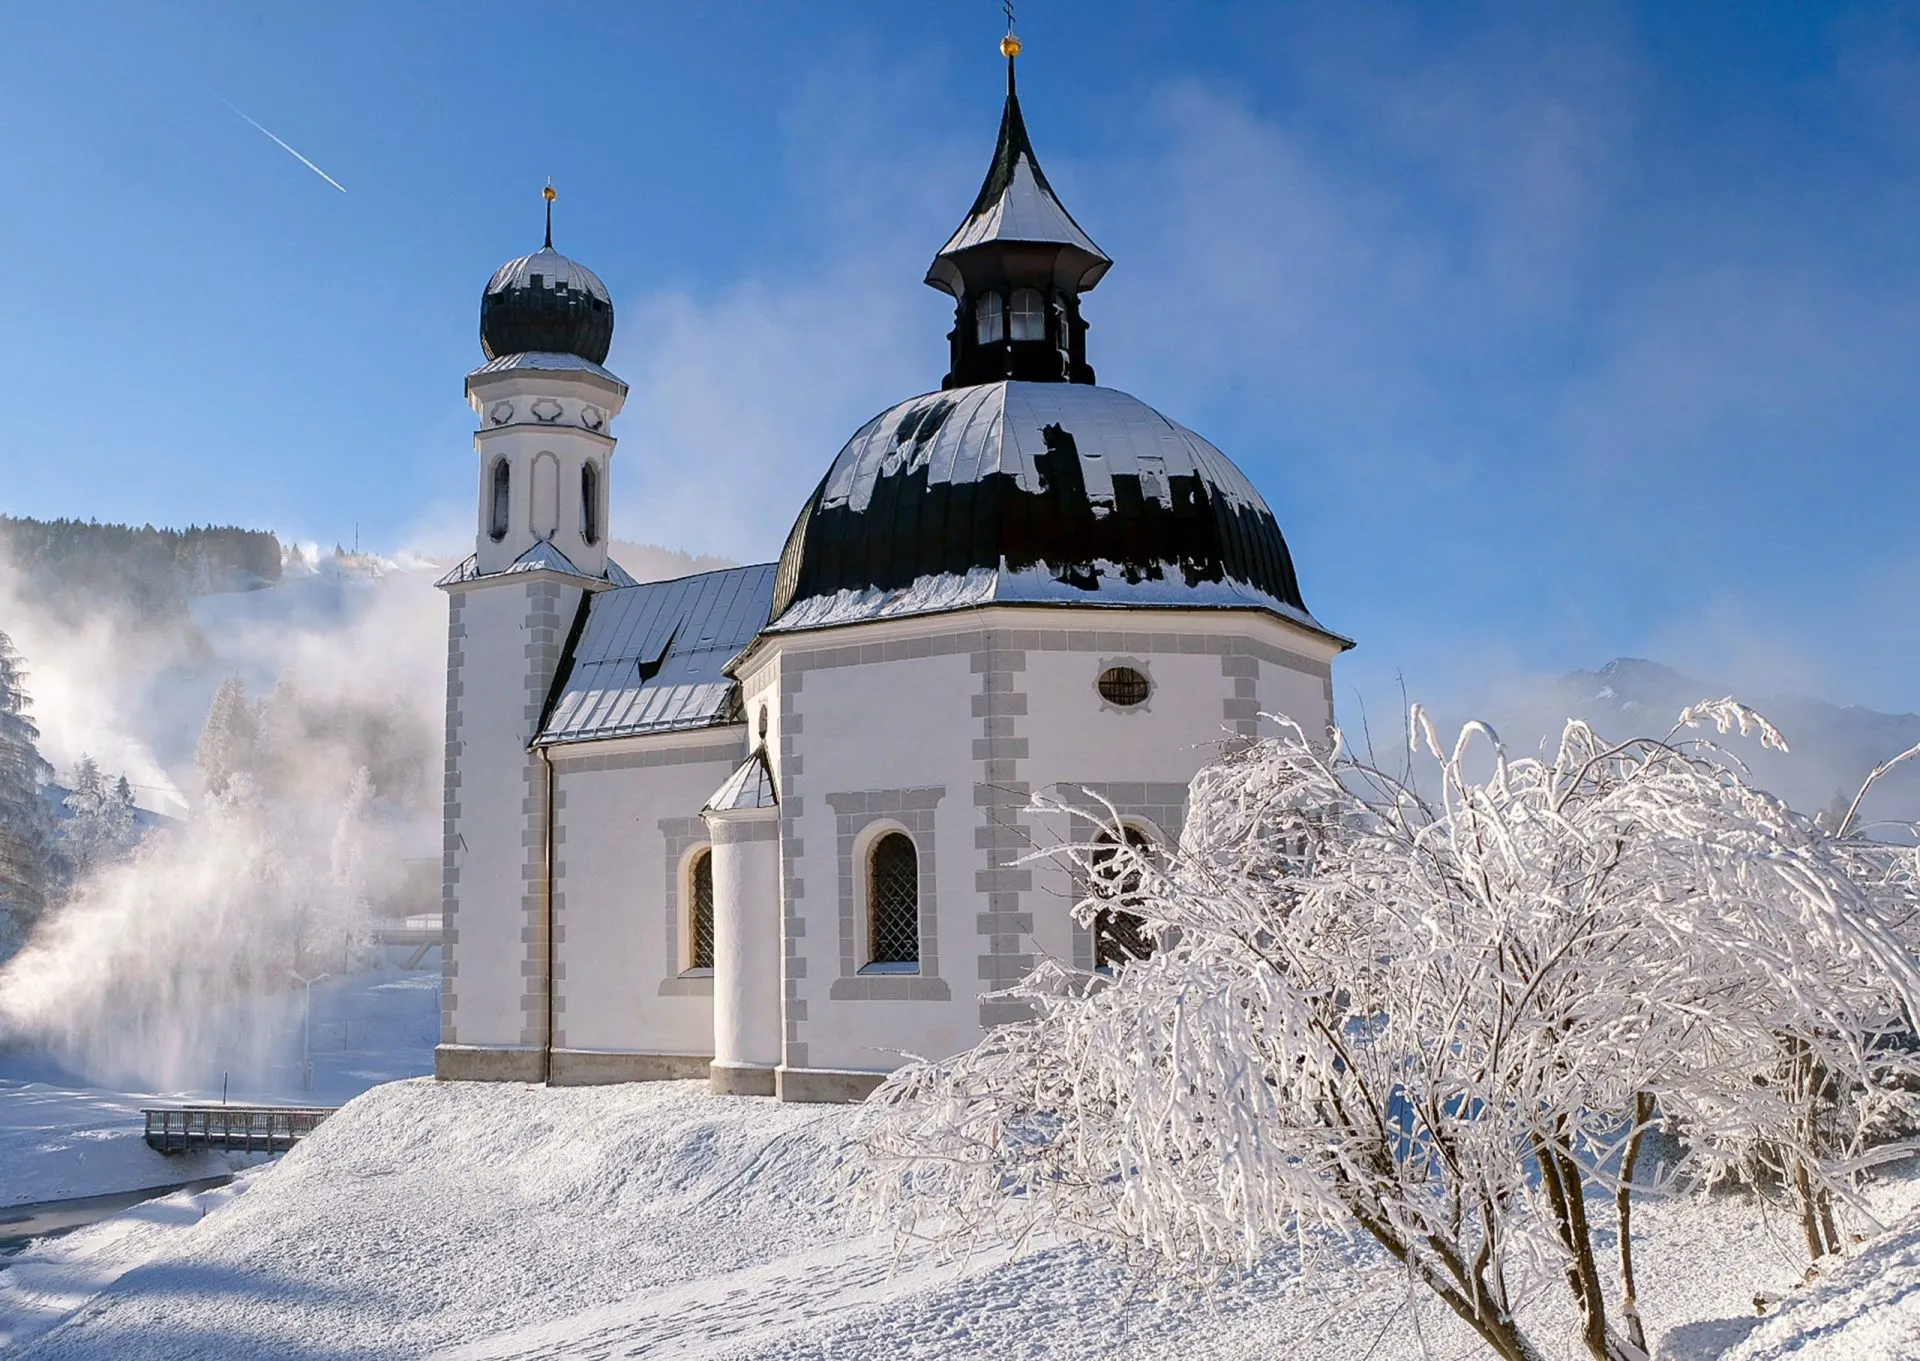 Chiesa di Seefeld in inverno